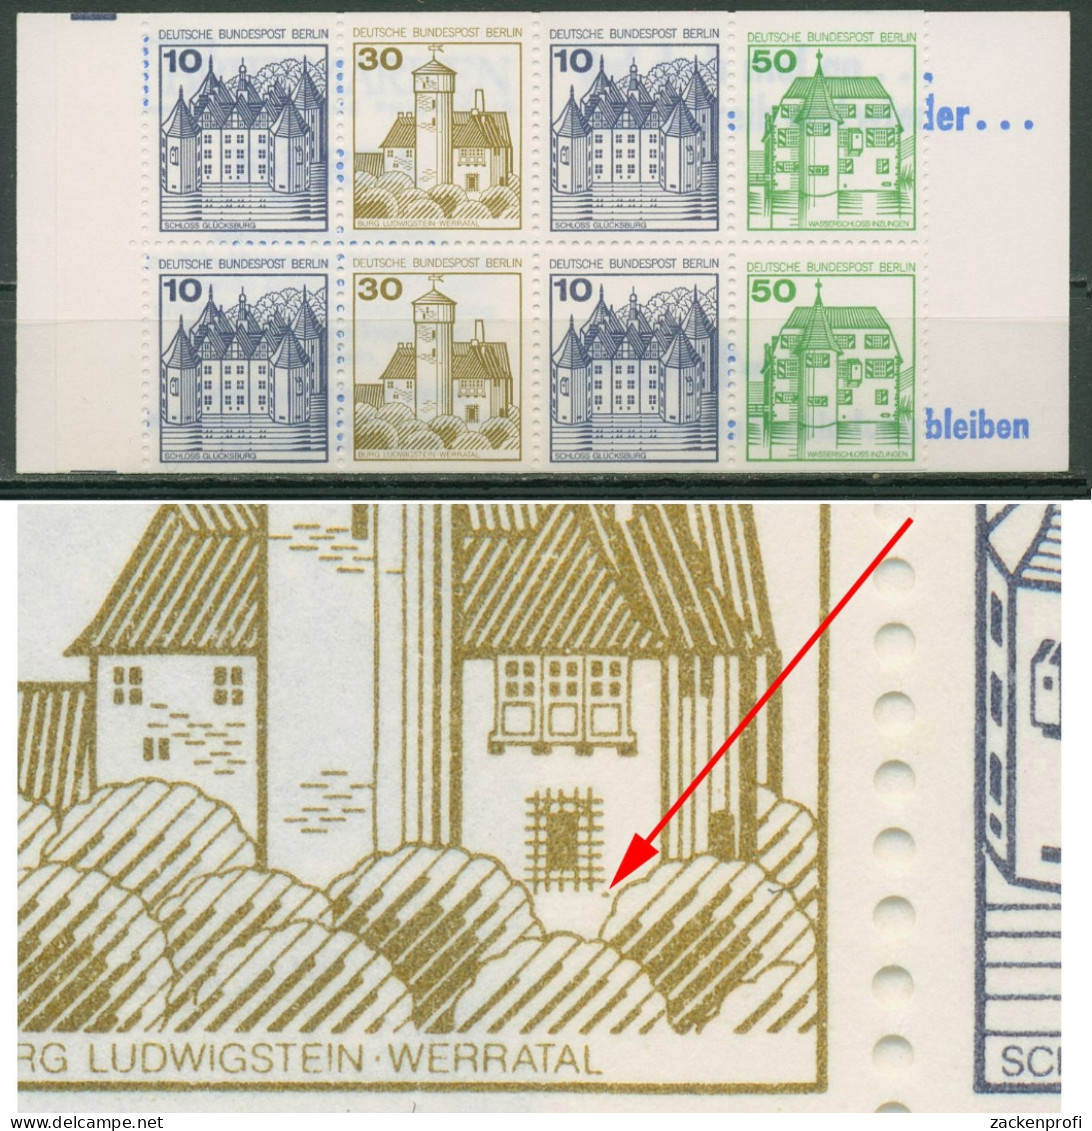 Berlin Markenheftchen 1980 B & S Mit Plattenfehler MH 11 G PF II Postfrisch - Abarten Und Kuriositäten